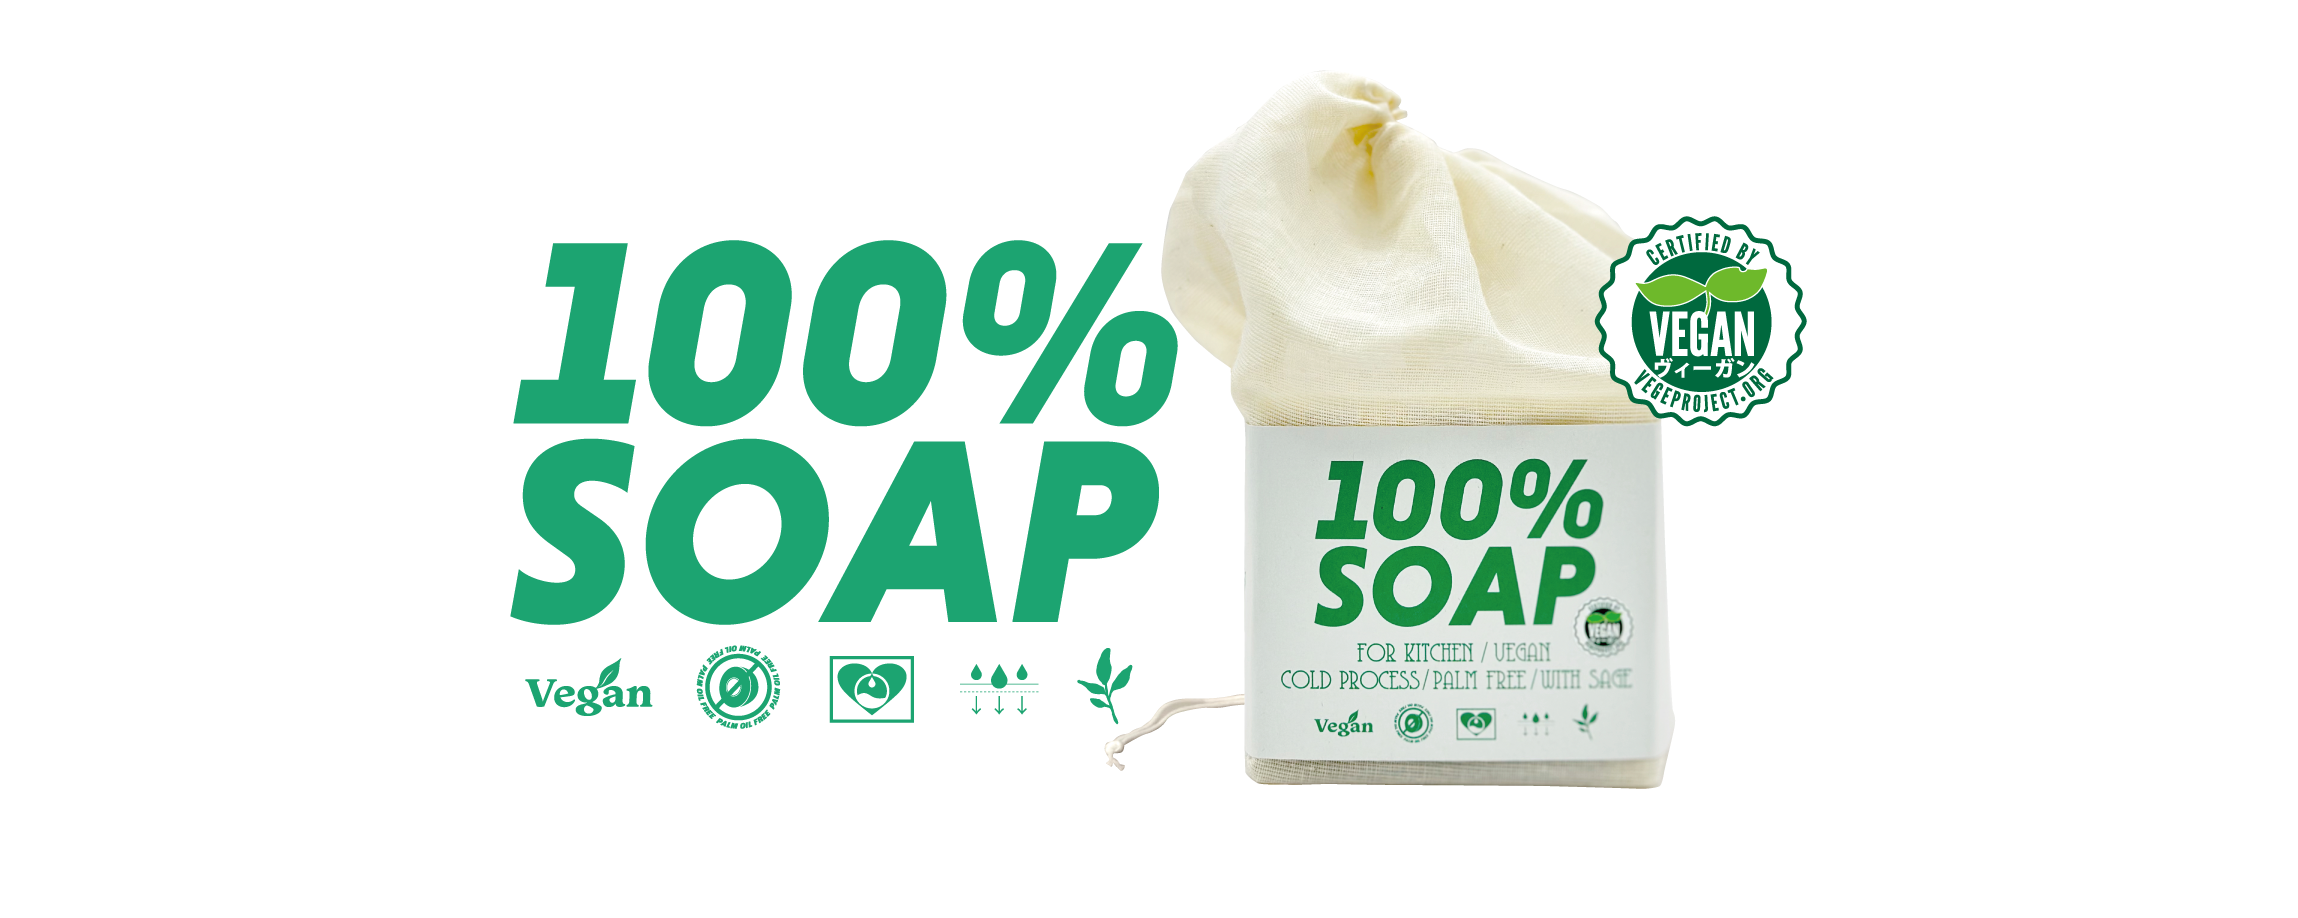 ヴィーガン・コールドプロセス製法のキッチン用大型固形石鹸、100%SOAPメイン画像